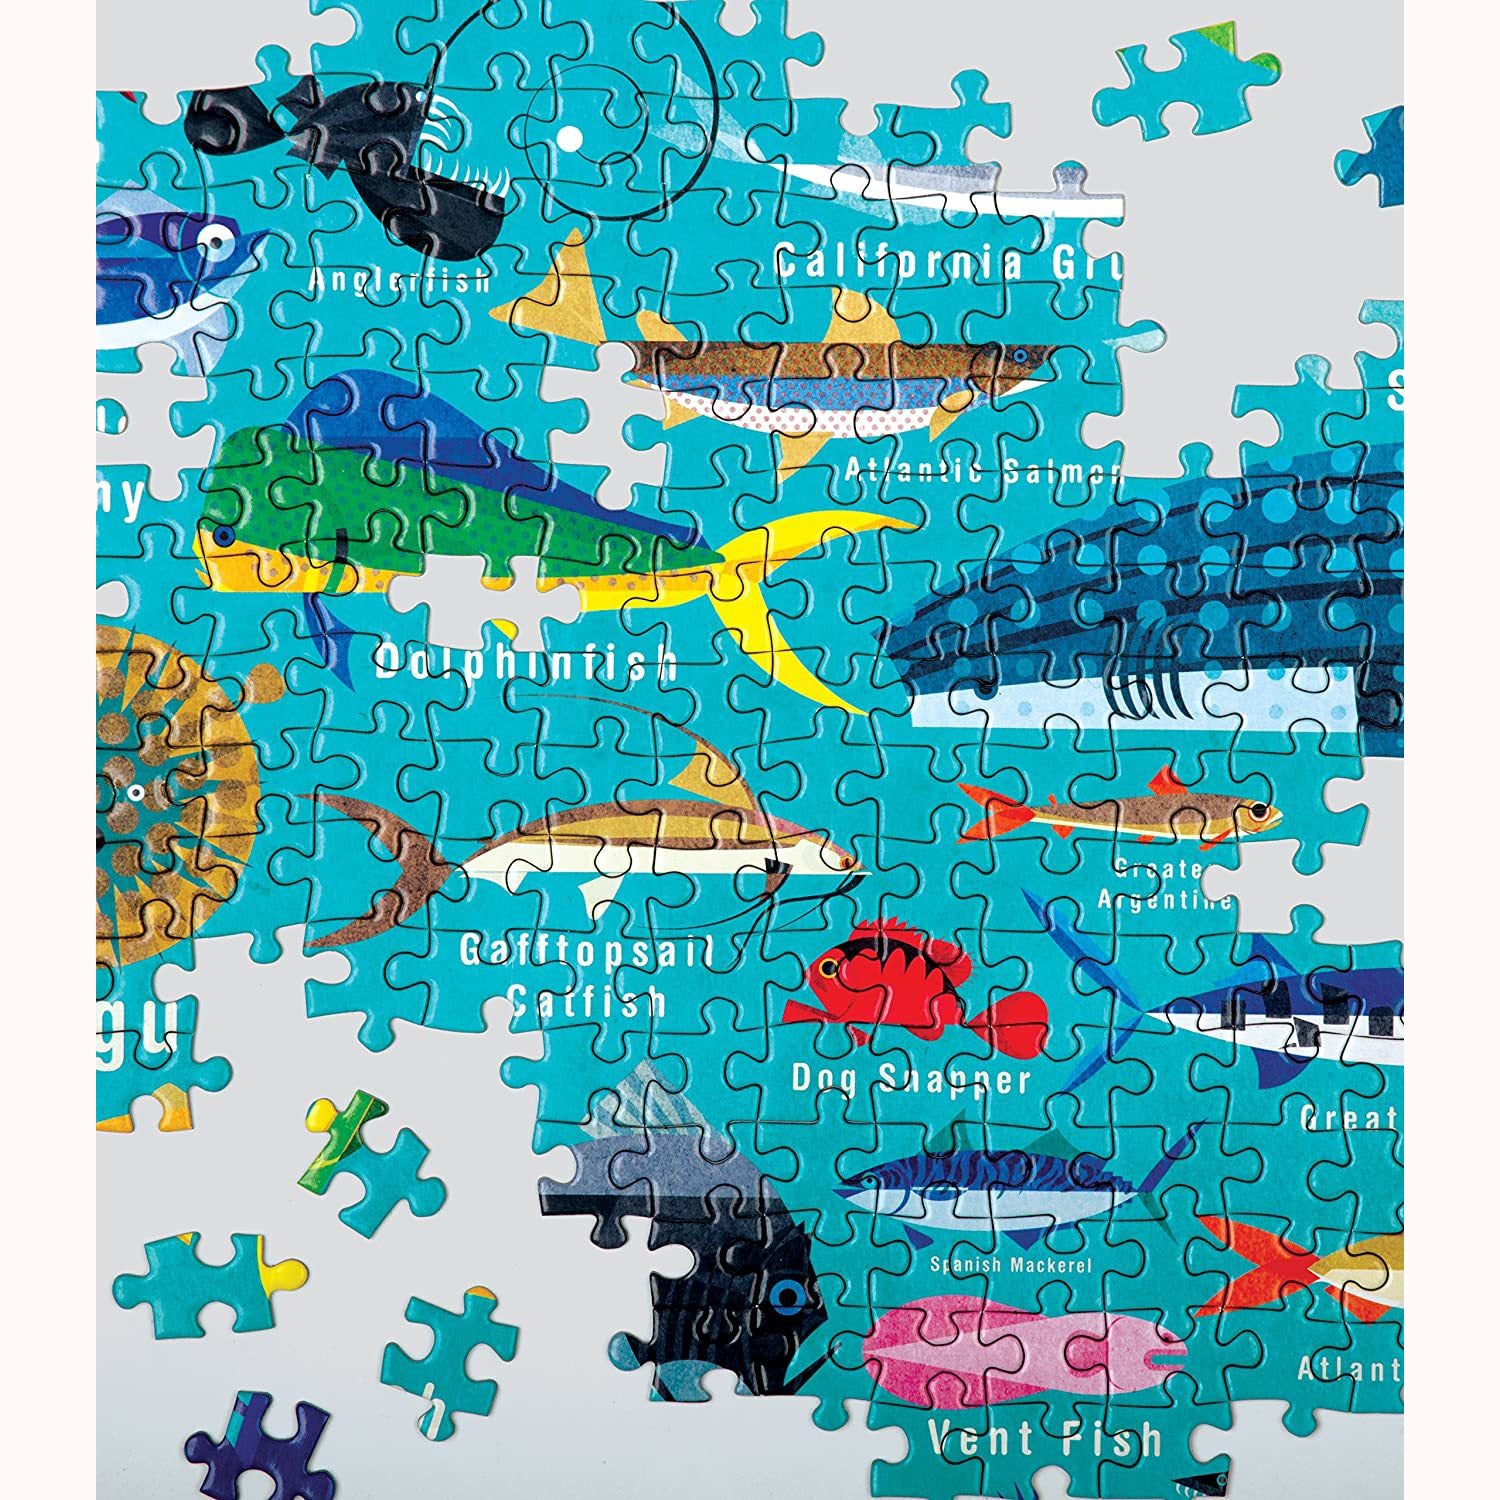 Ocean Life Puzzle - 1000 pieces, After Alice